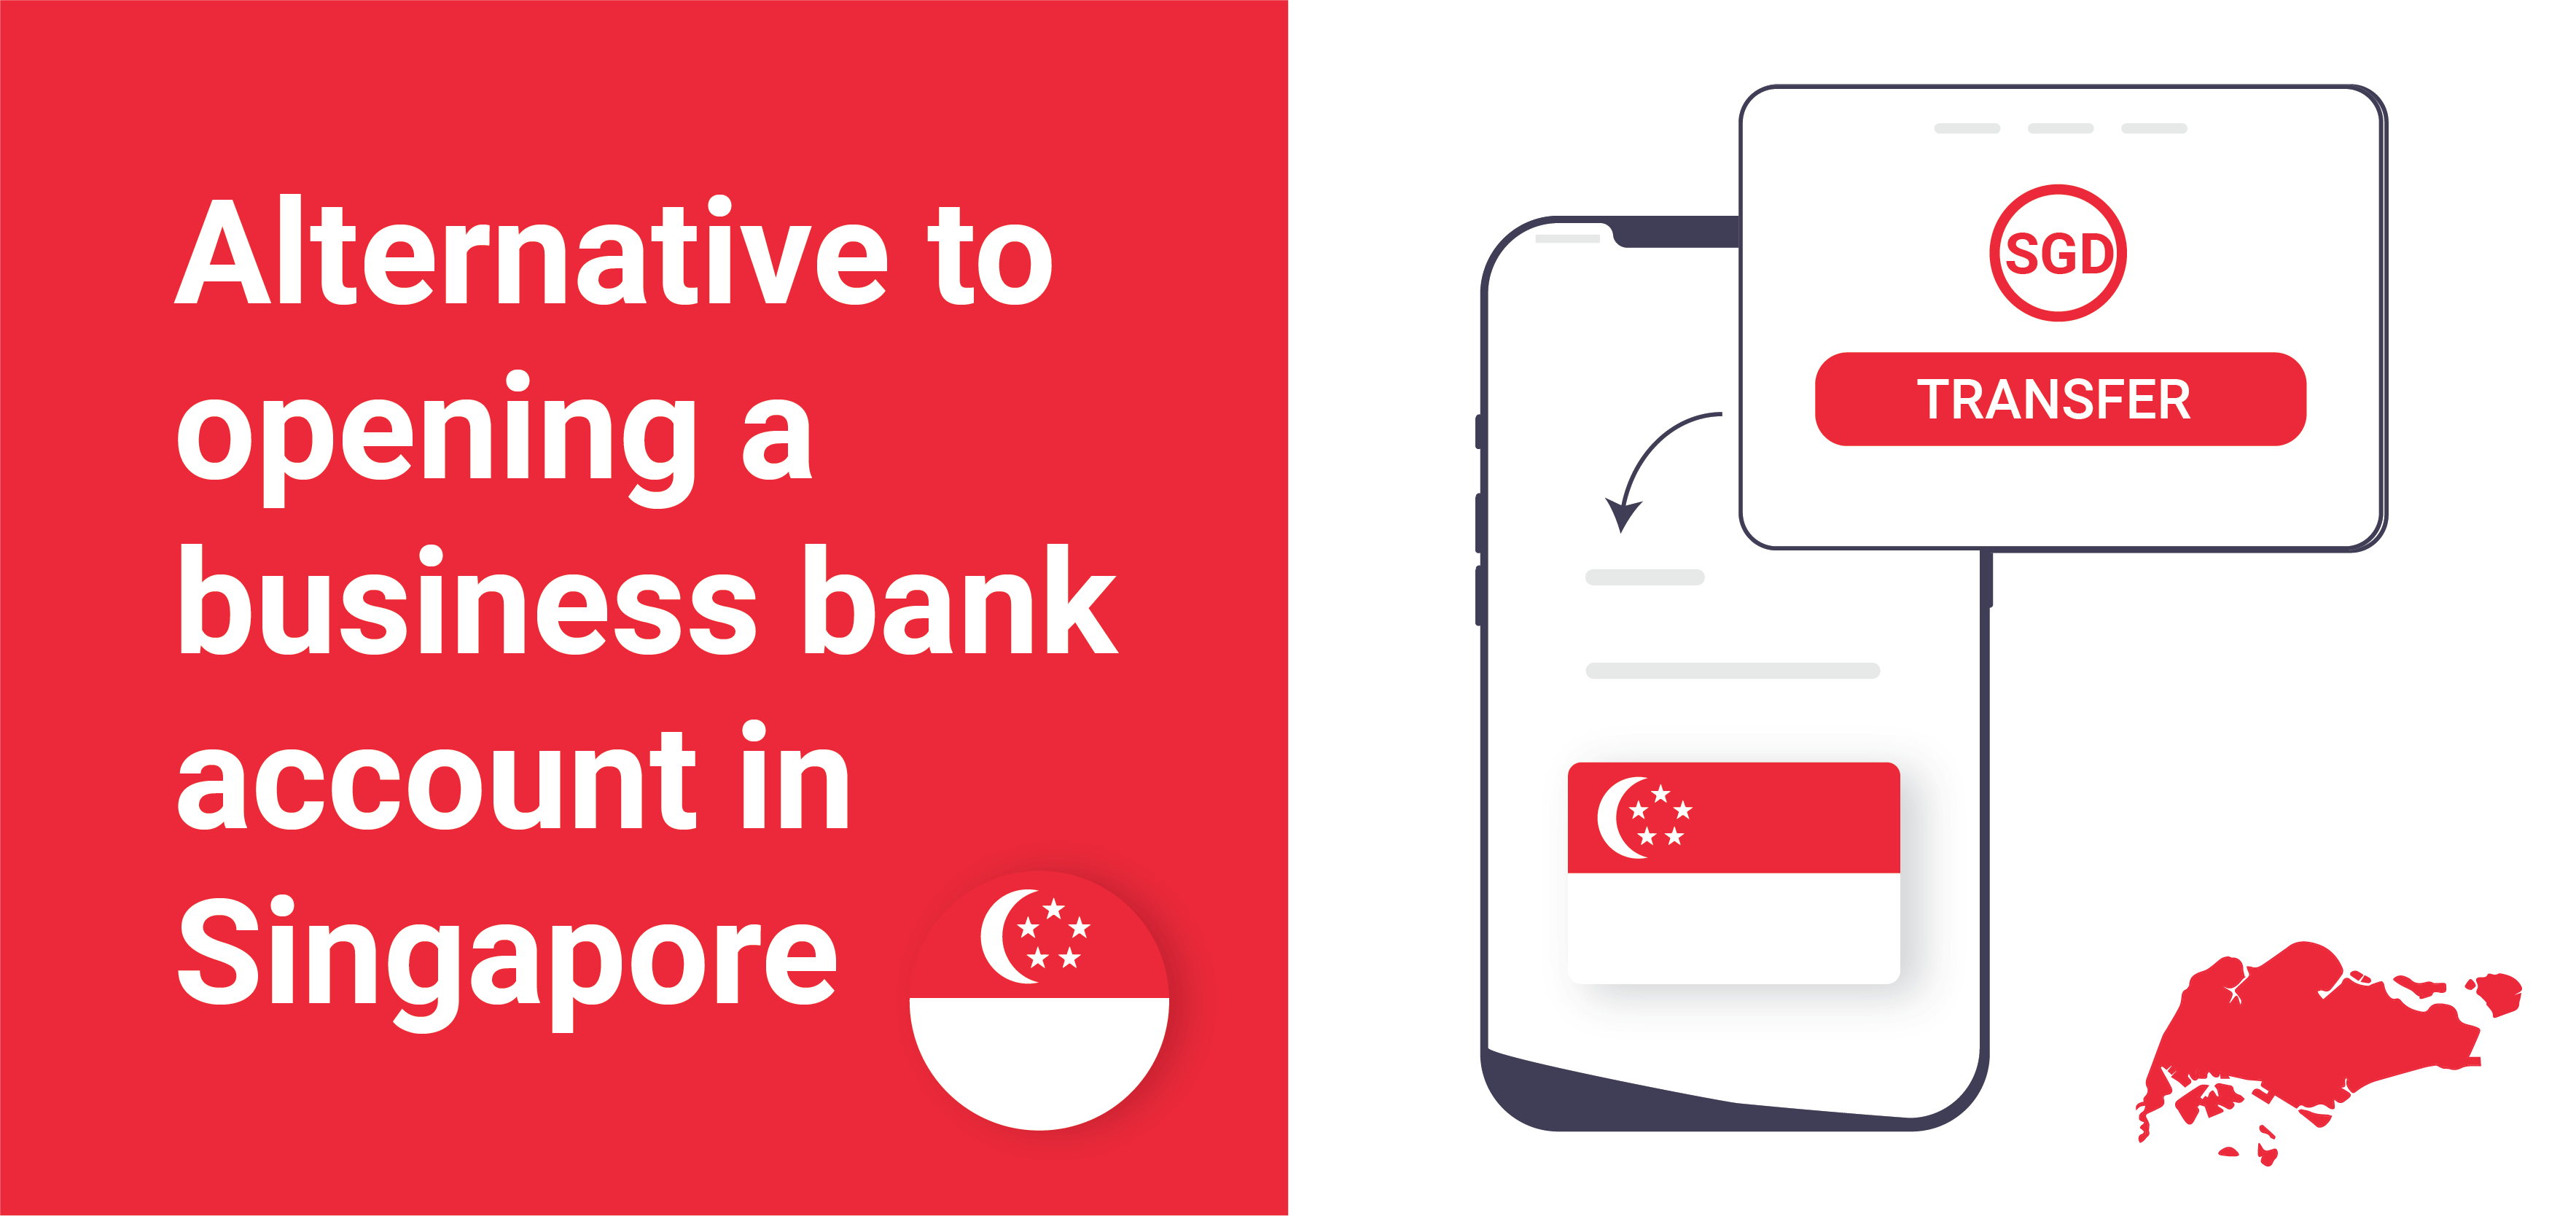 ทางเลือกในการเปิดบัญชีธนาคารธุรกิจในสิงคโปร์ - Payoneer Blog